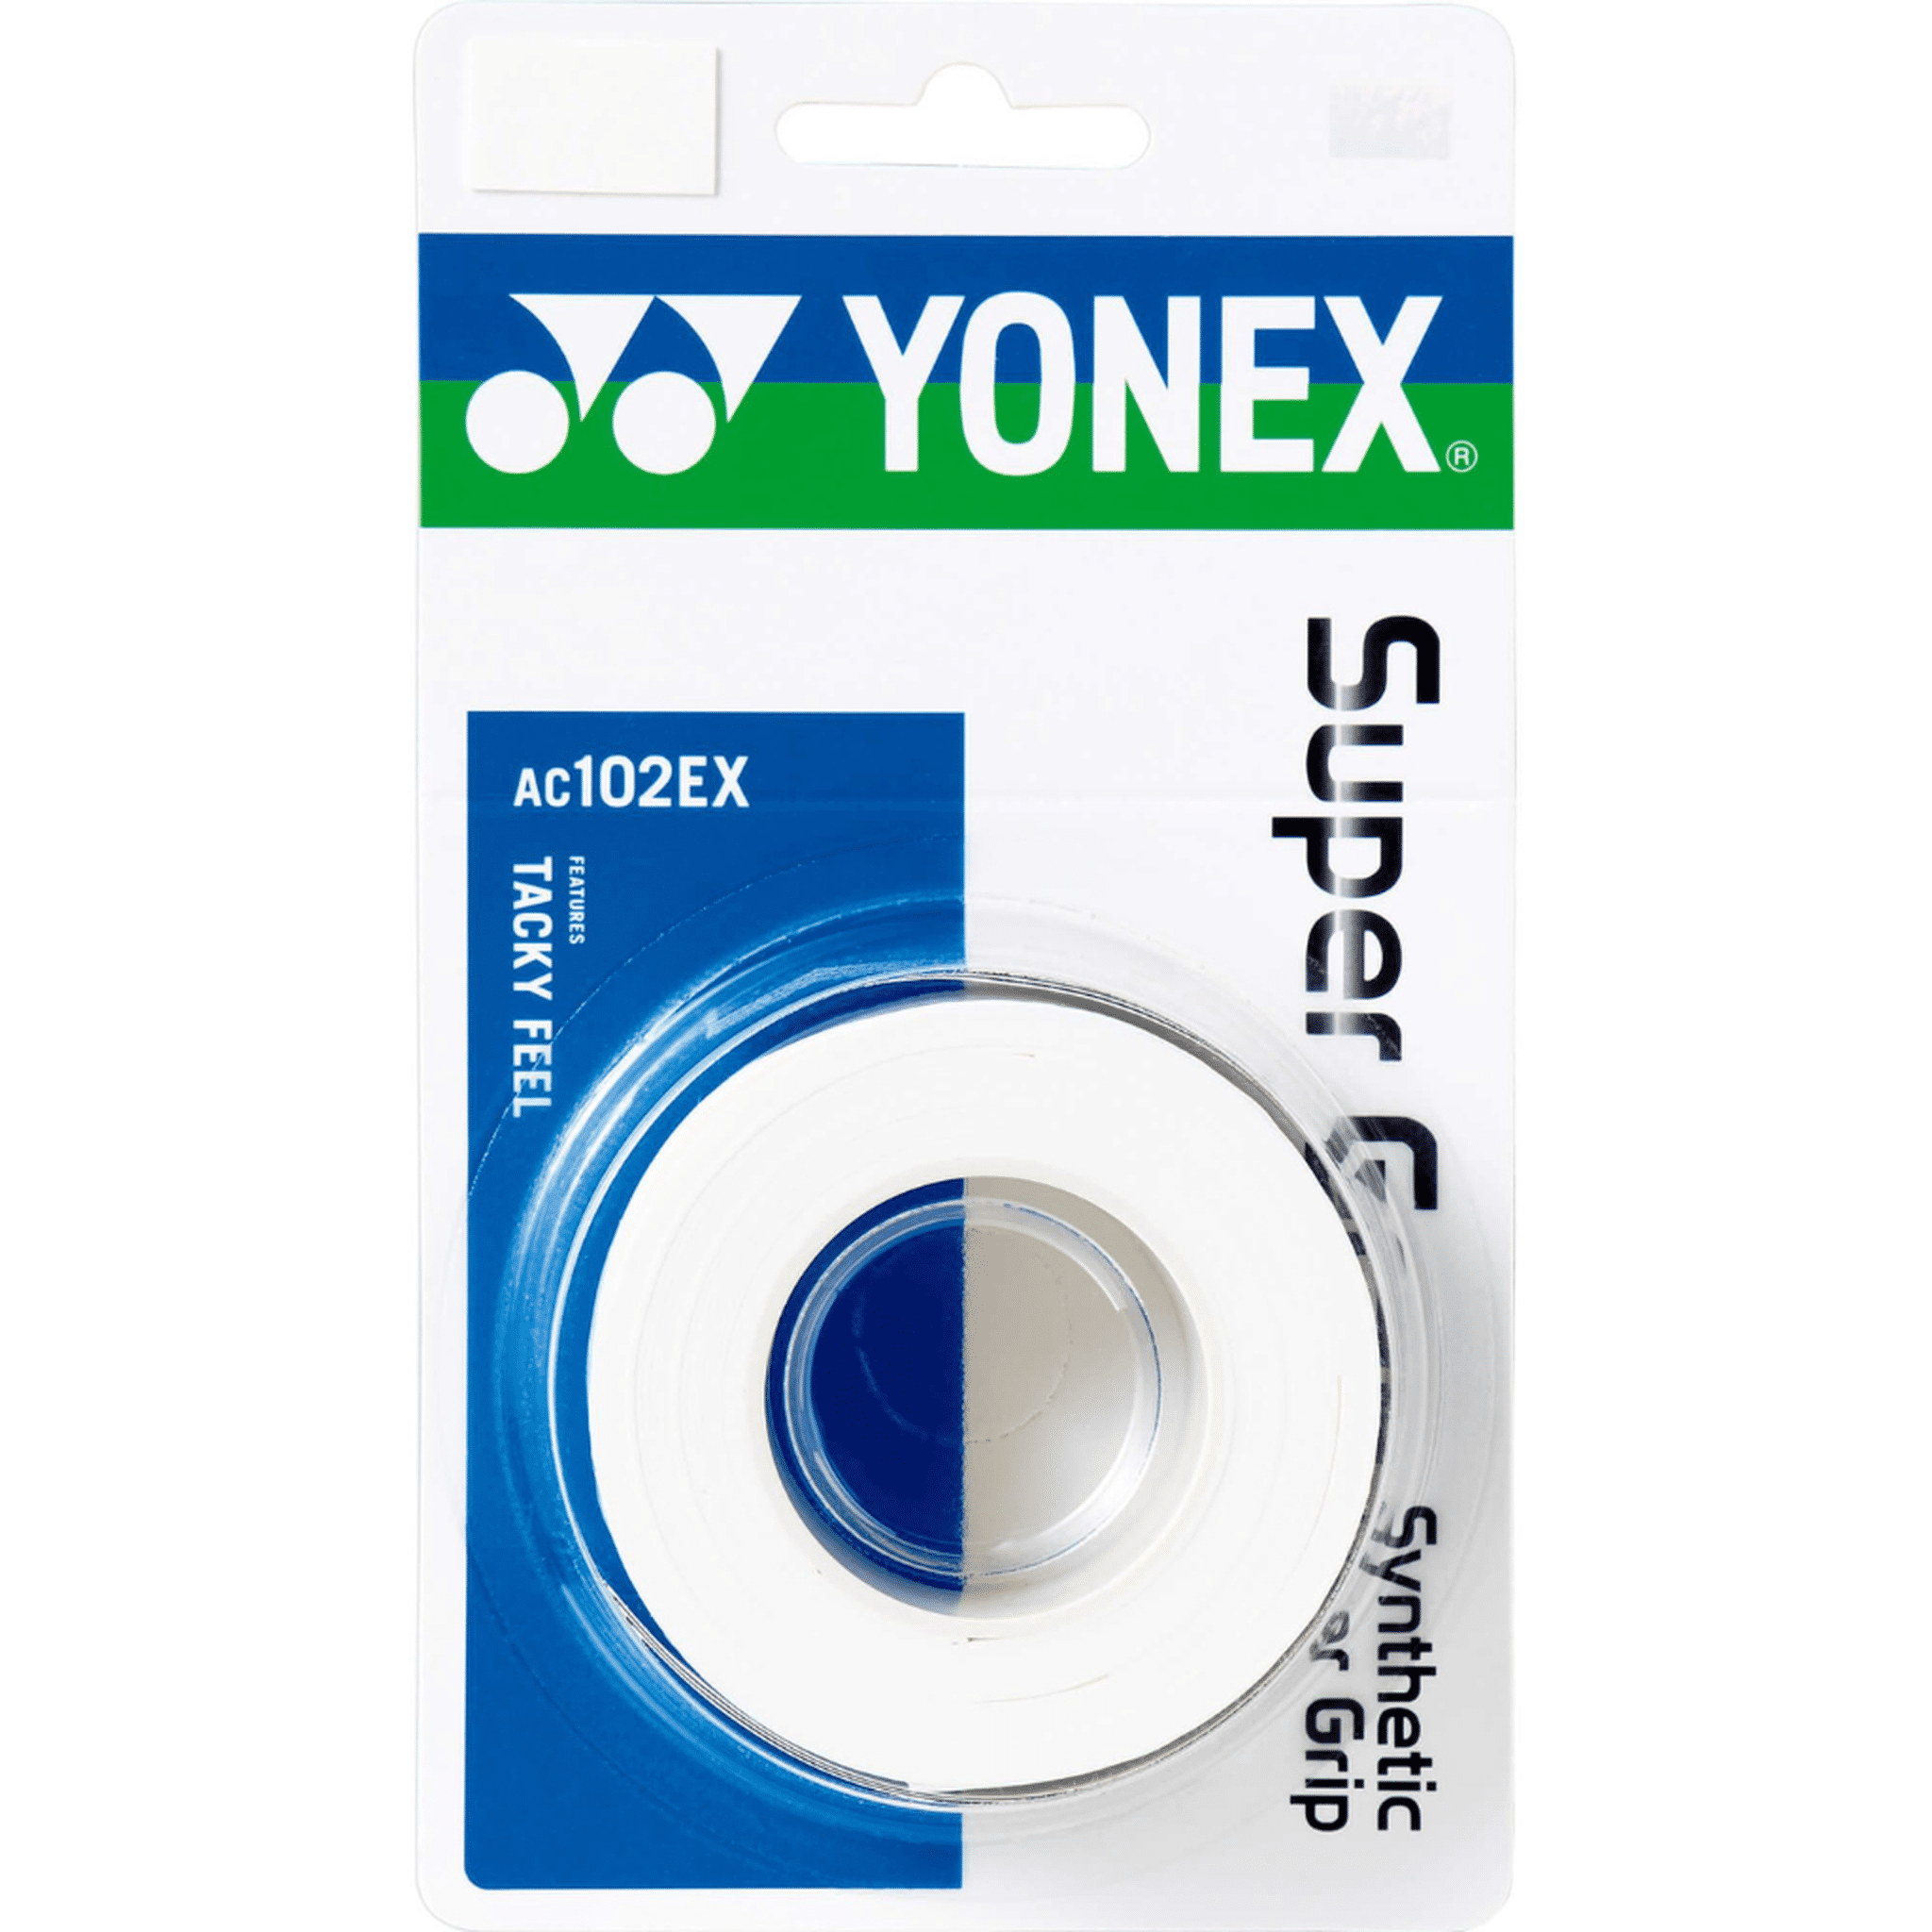 Yonex Super Grap Grips Pack of 3 - Various Colours